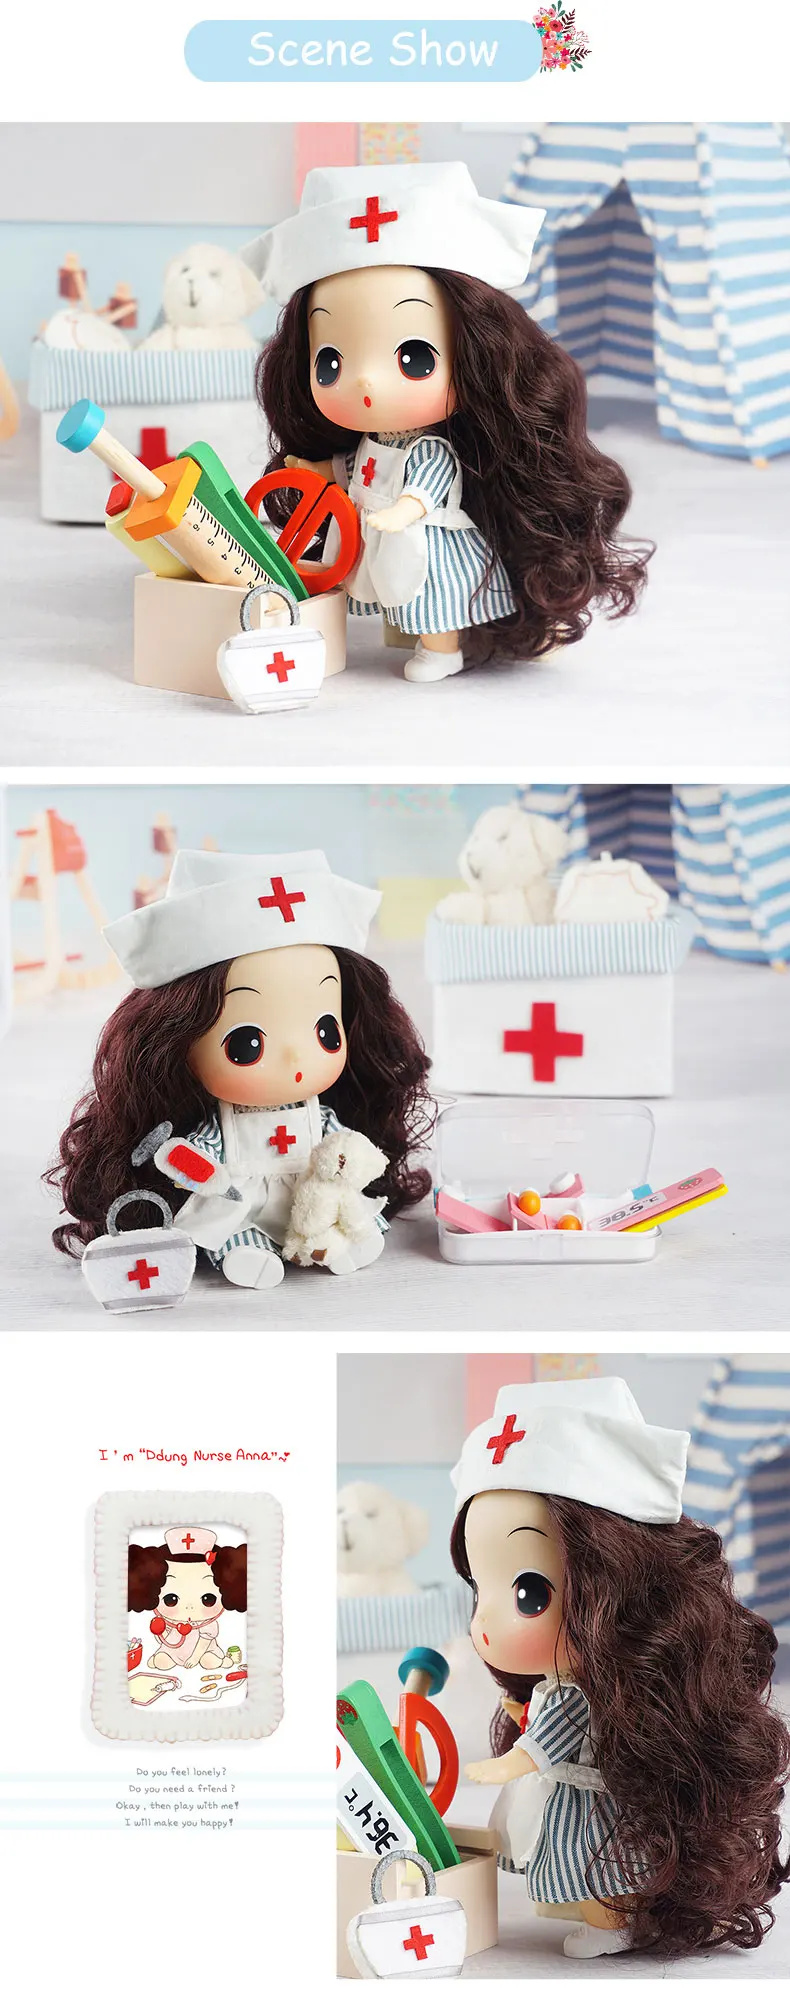 Кукла Ddung Reborn Baby Doll игрушка 18 см/7 дюймов медсестры Мода Мини Принцесса Развивающие детские игрушки подарок на день рождения для детей от 3-х лет